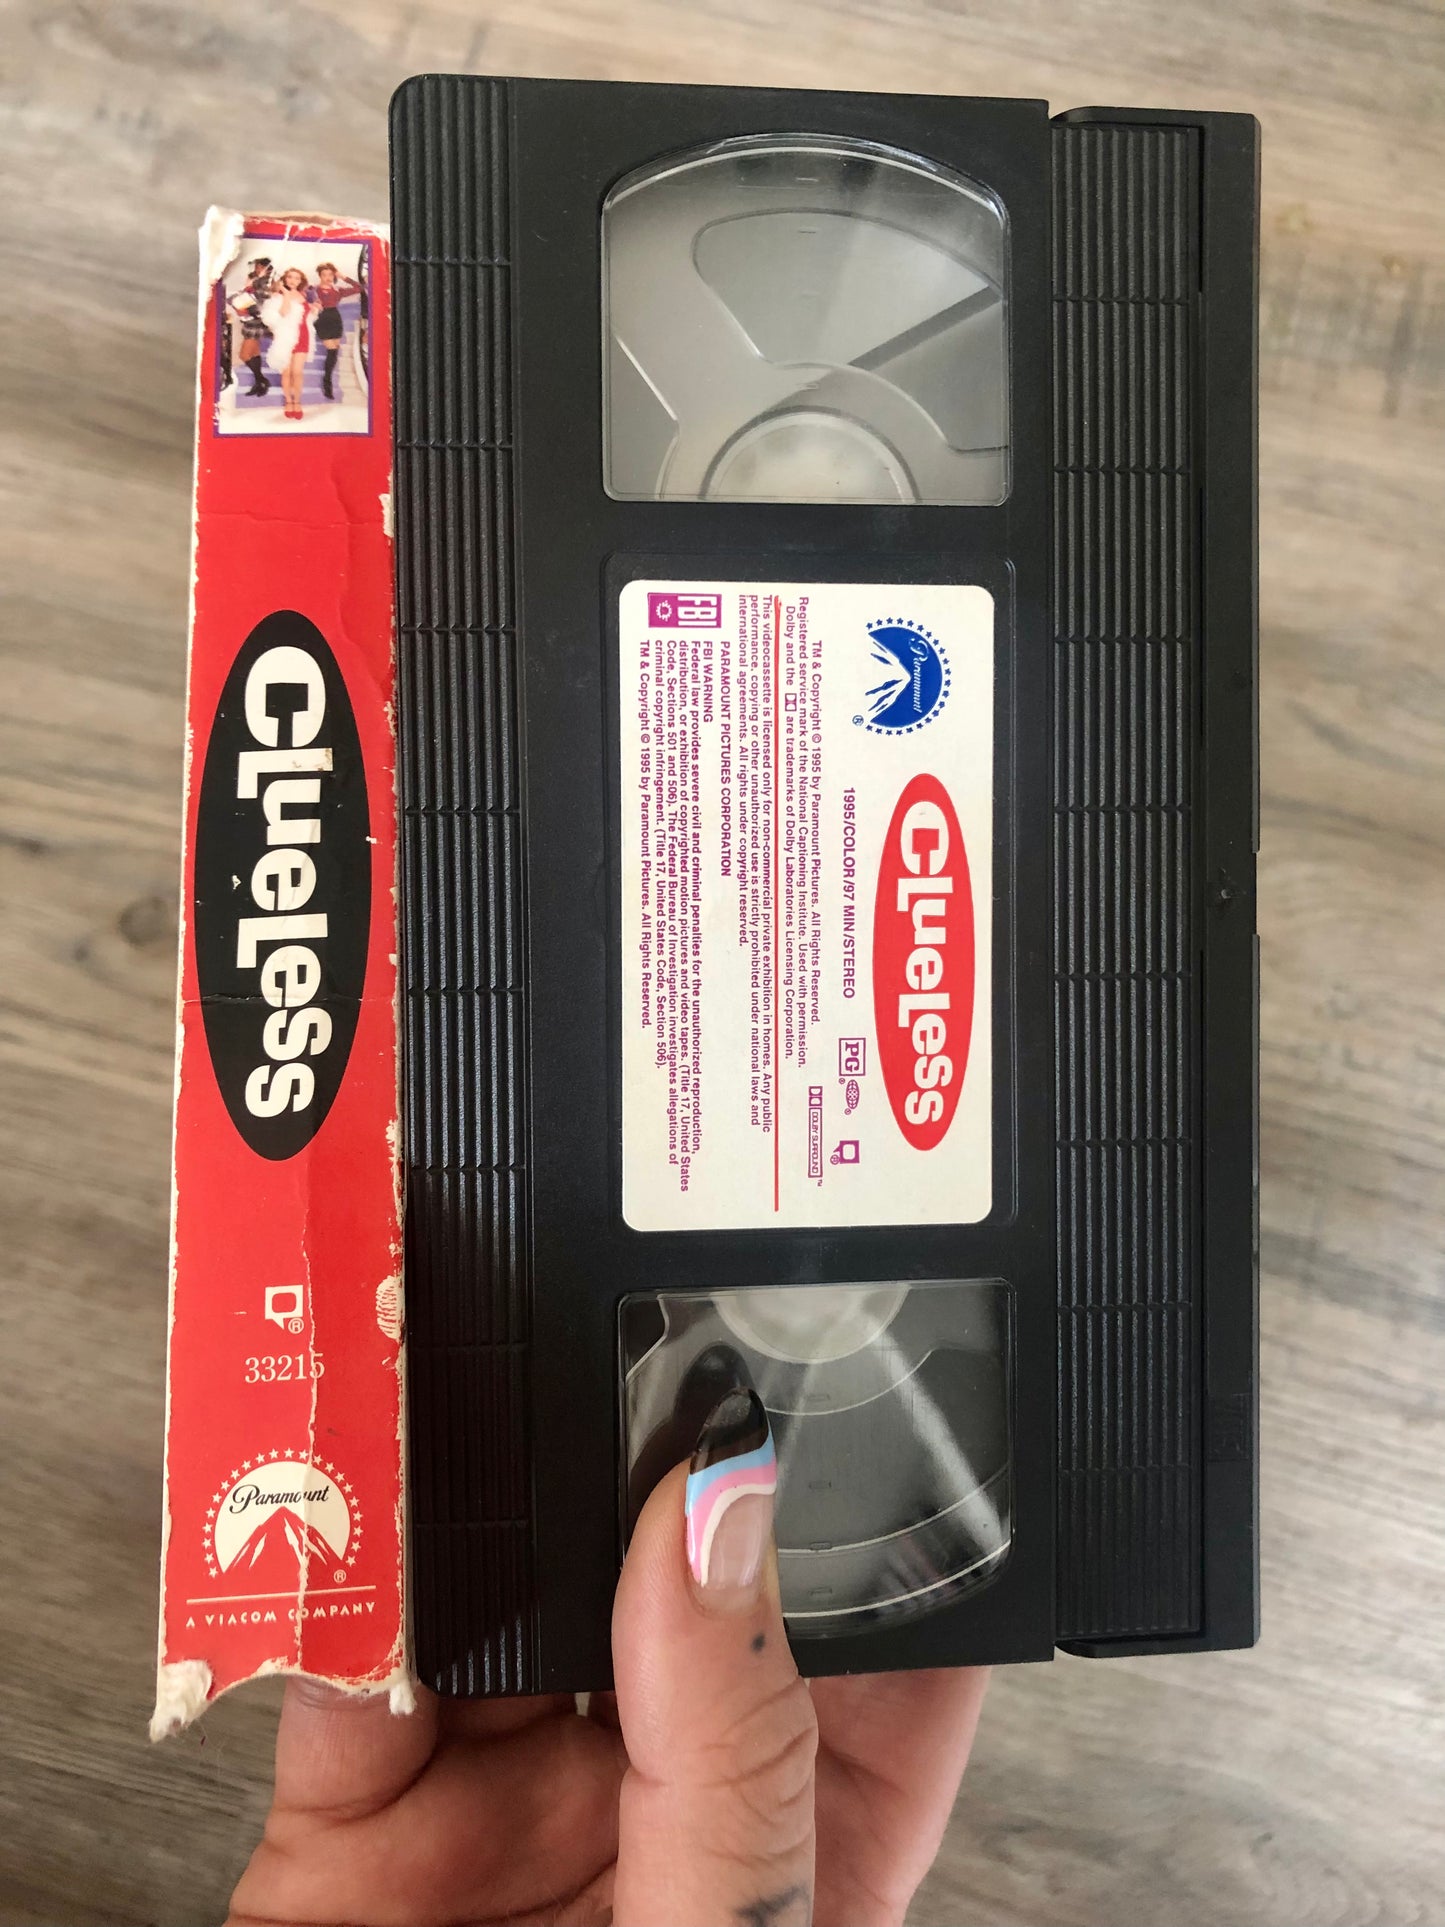 Clueless VHS